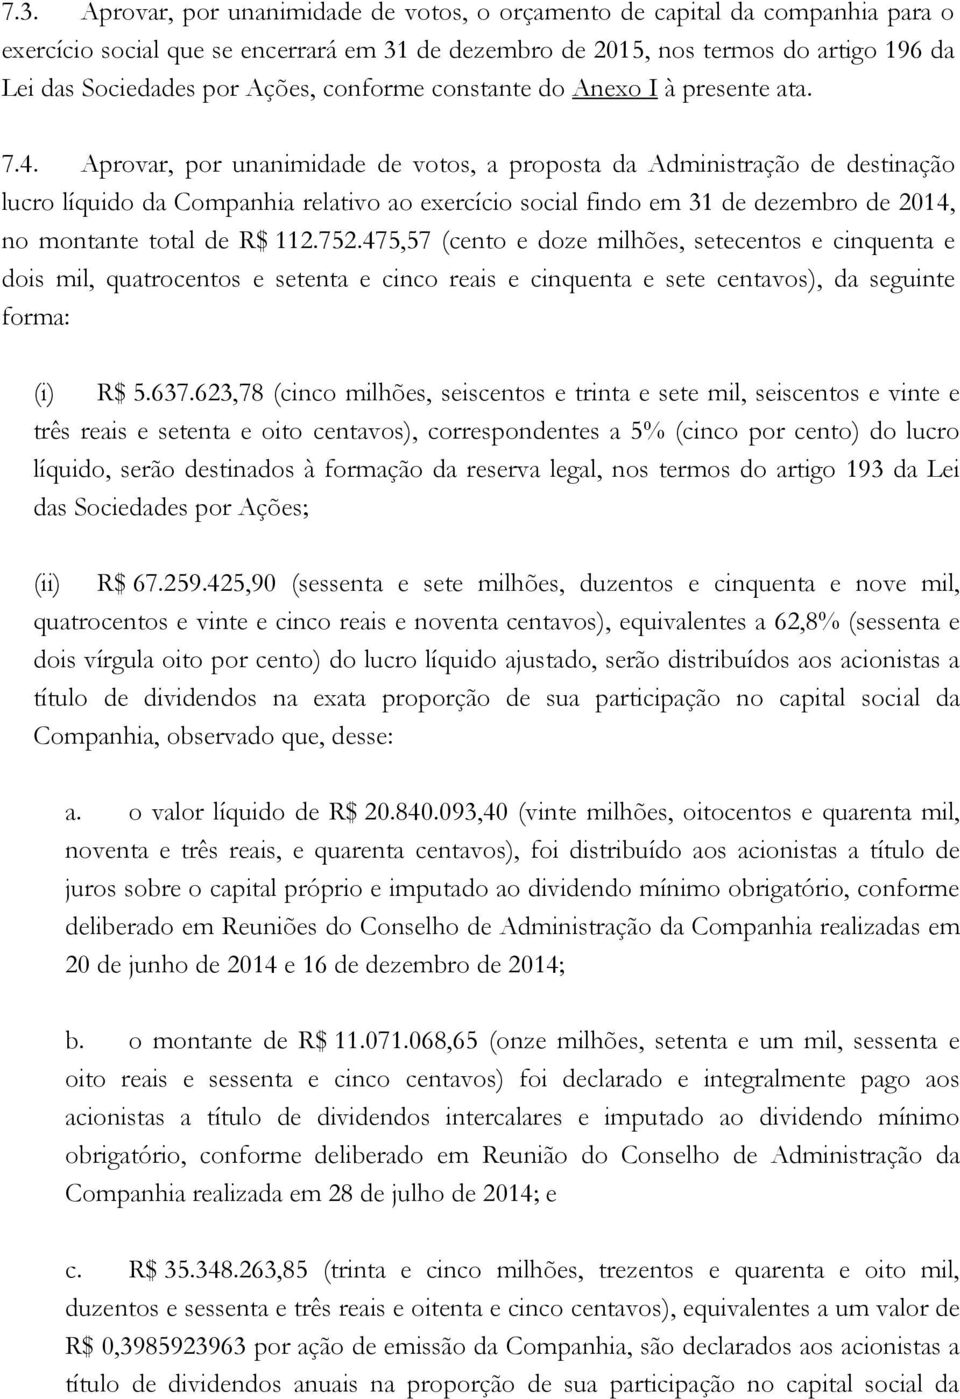 Aprovar, por unanimidade de votos, a proposta da Administração de destinação lucro líquido da Companhia relativo ao exercício social findo em 31 de dezembro de 2014, no montante total de R$ 112.752.